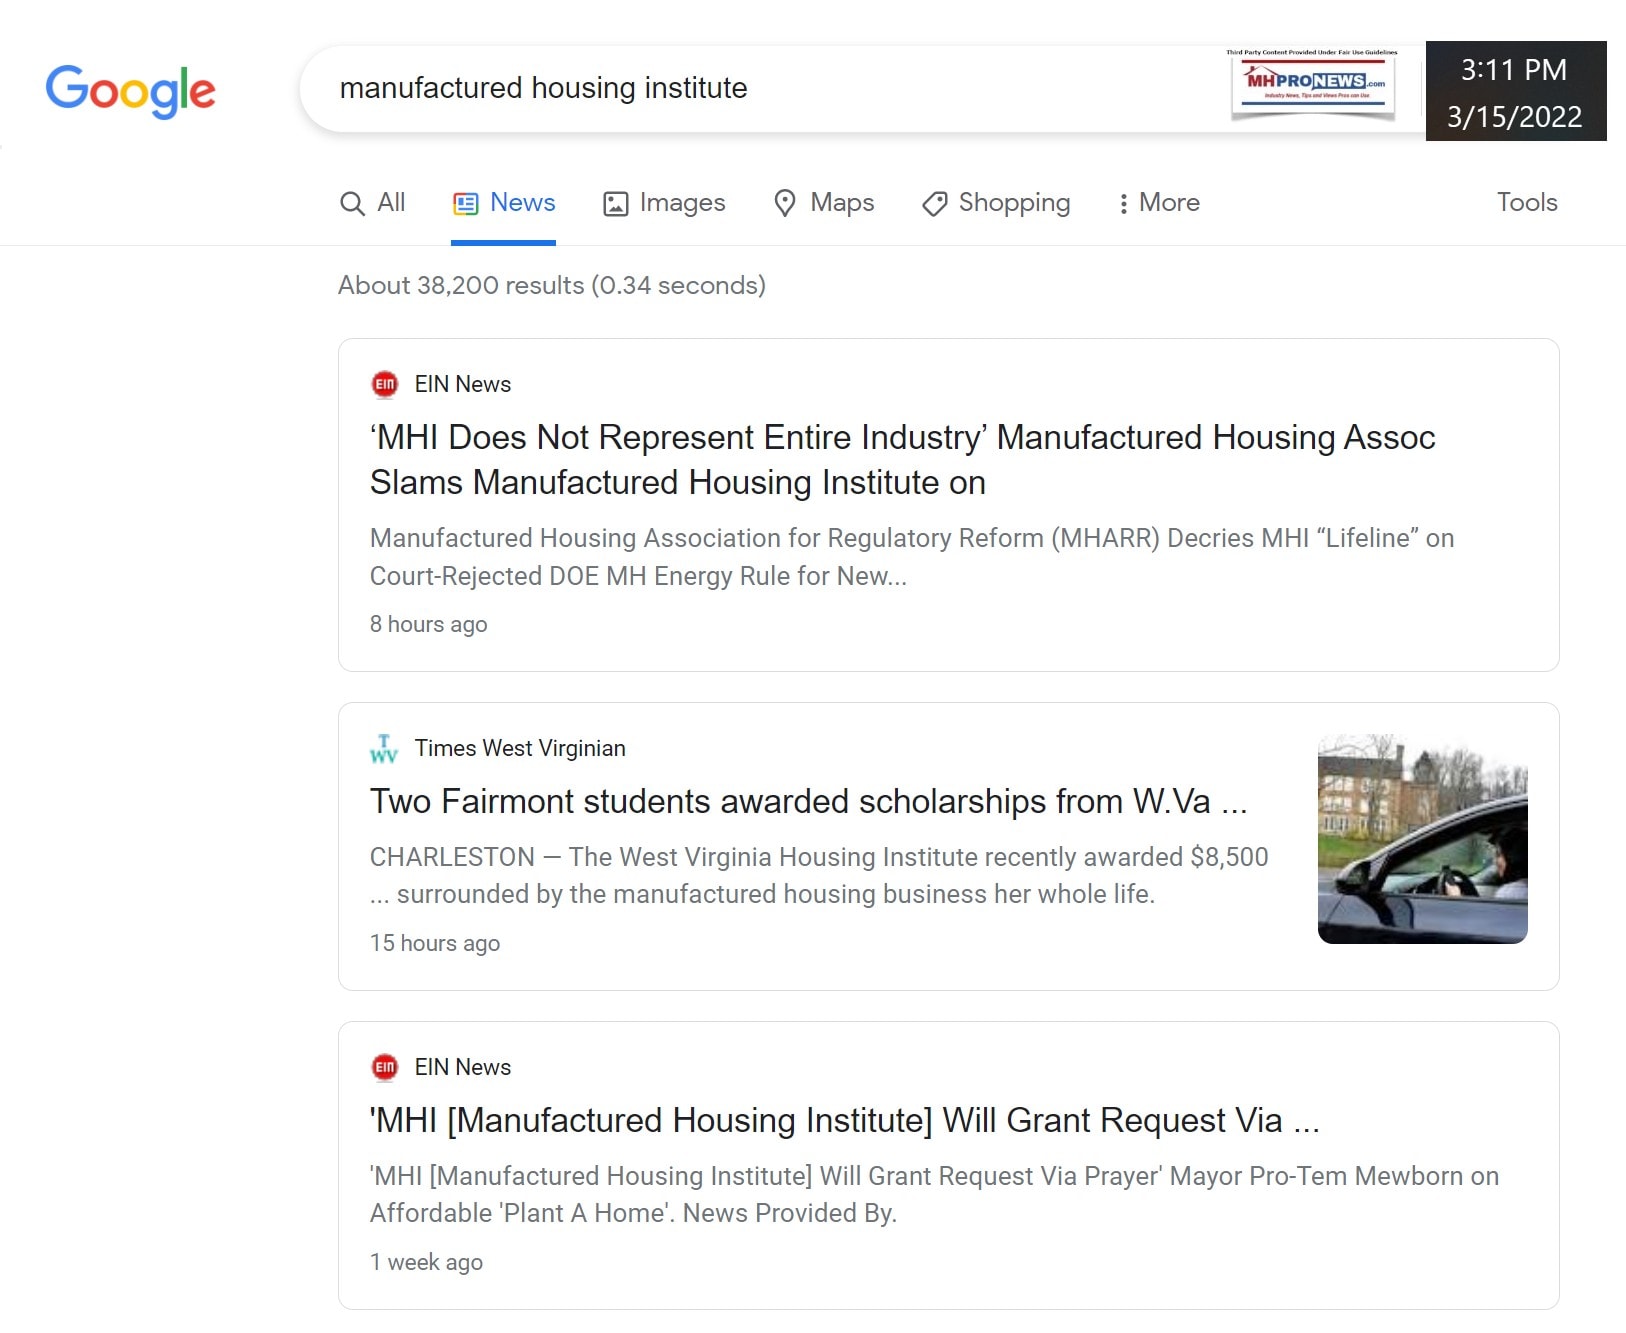 ManufacturedHousingInstituteGoogleNewsSearch3.11PM-3.15.2022-MHProNews